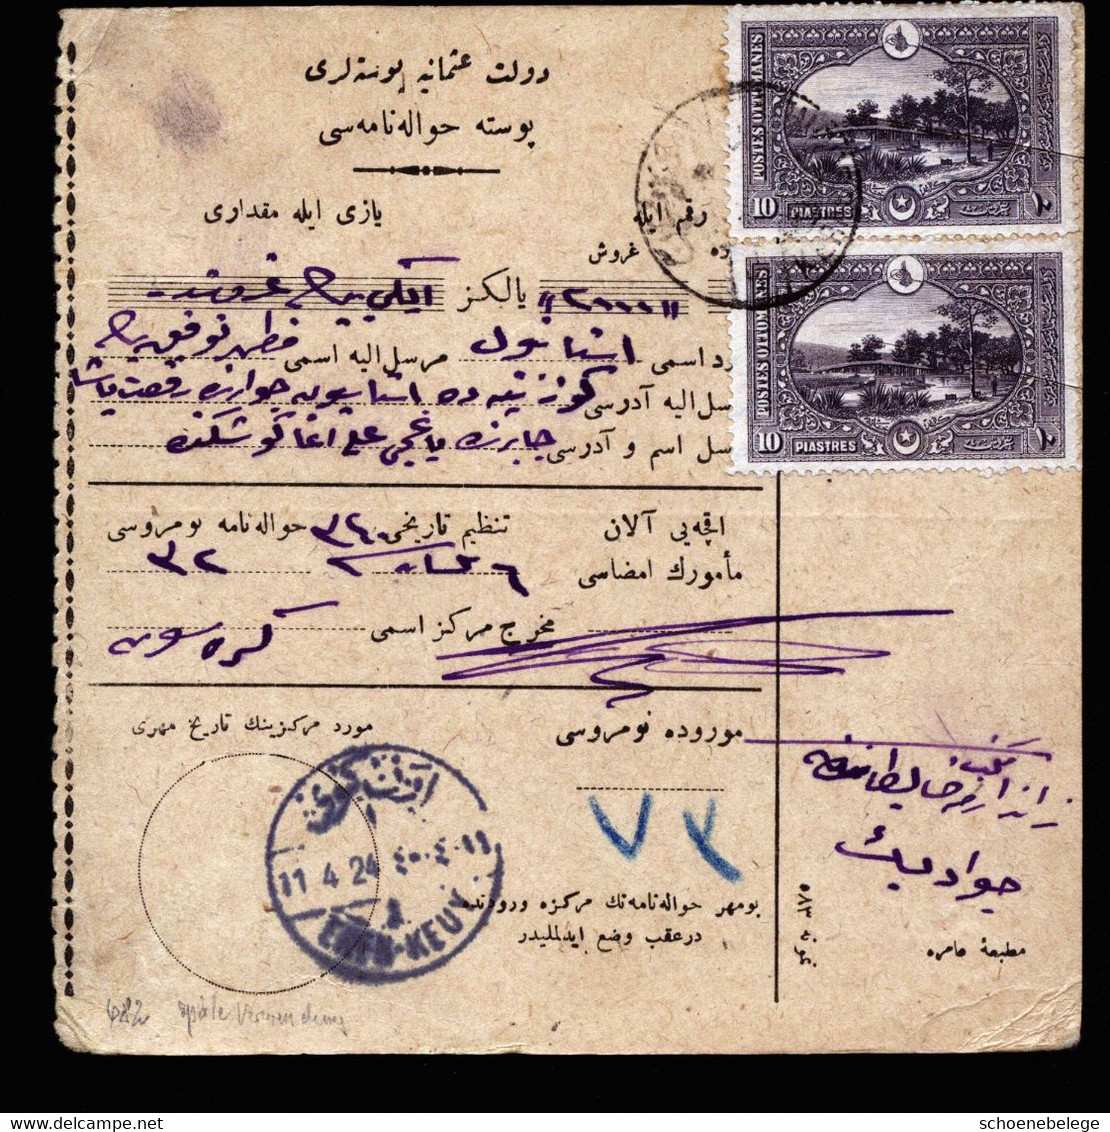 A7054) Osmanisches Reich / Türkei - Postanweisung (money Order) Vom 11.04.24 Mit 2x 10 Piaster - Covers & Documents